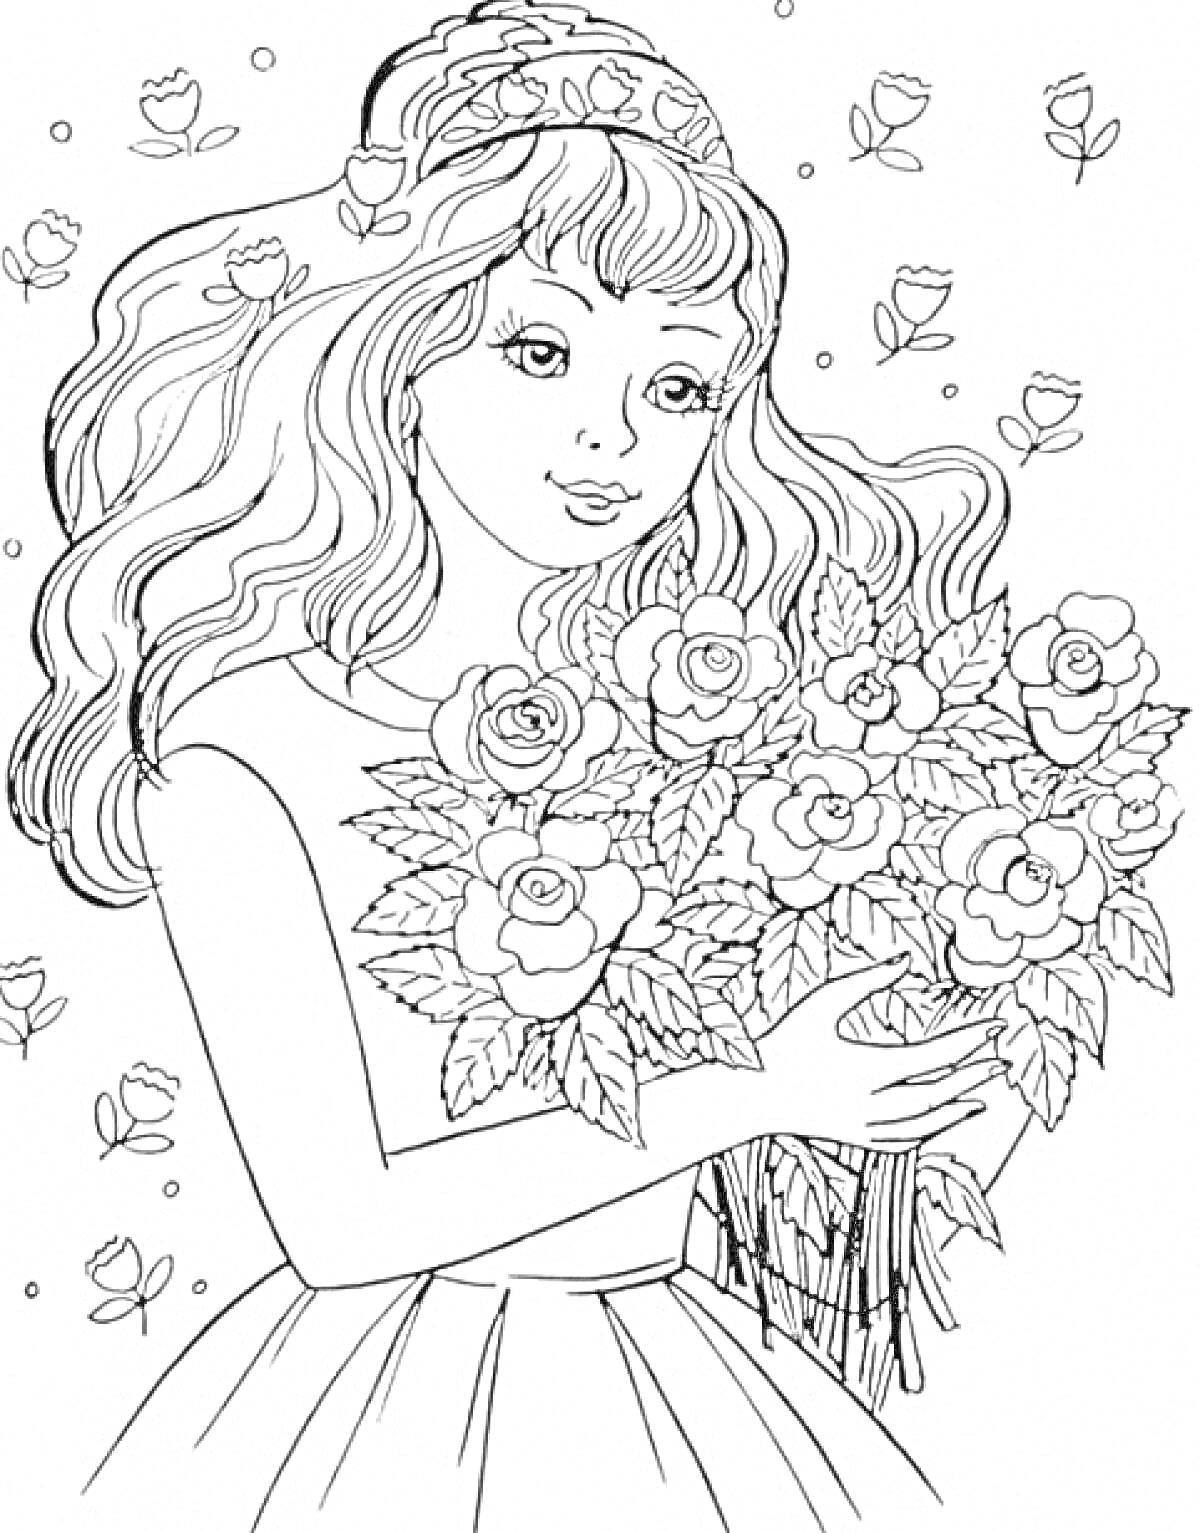 Девушка с букетом роз